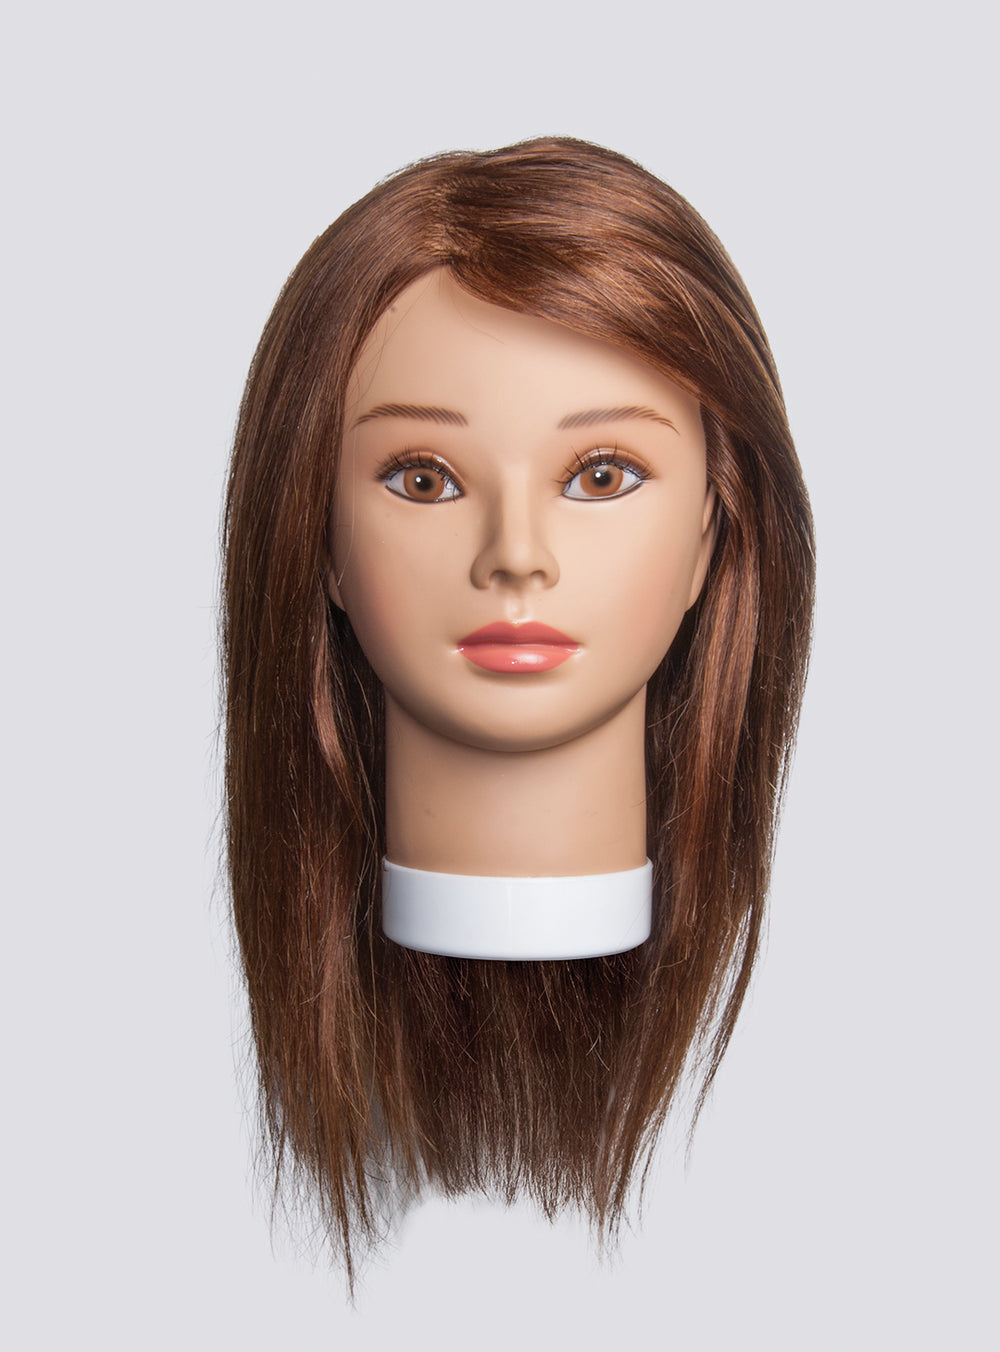 Premium Emma 100% Human Hair Mannequin Head